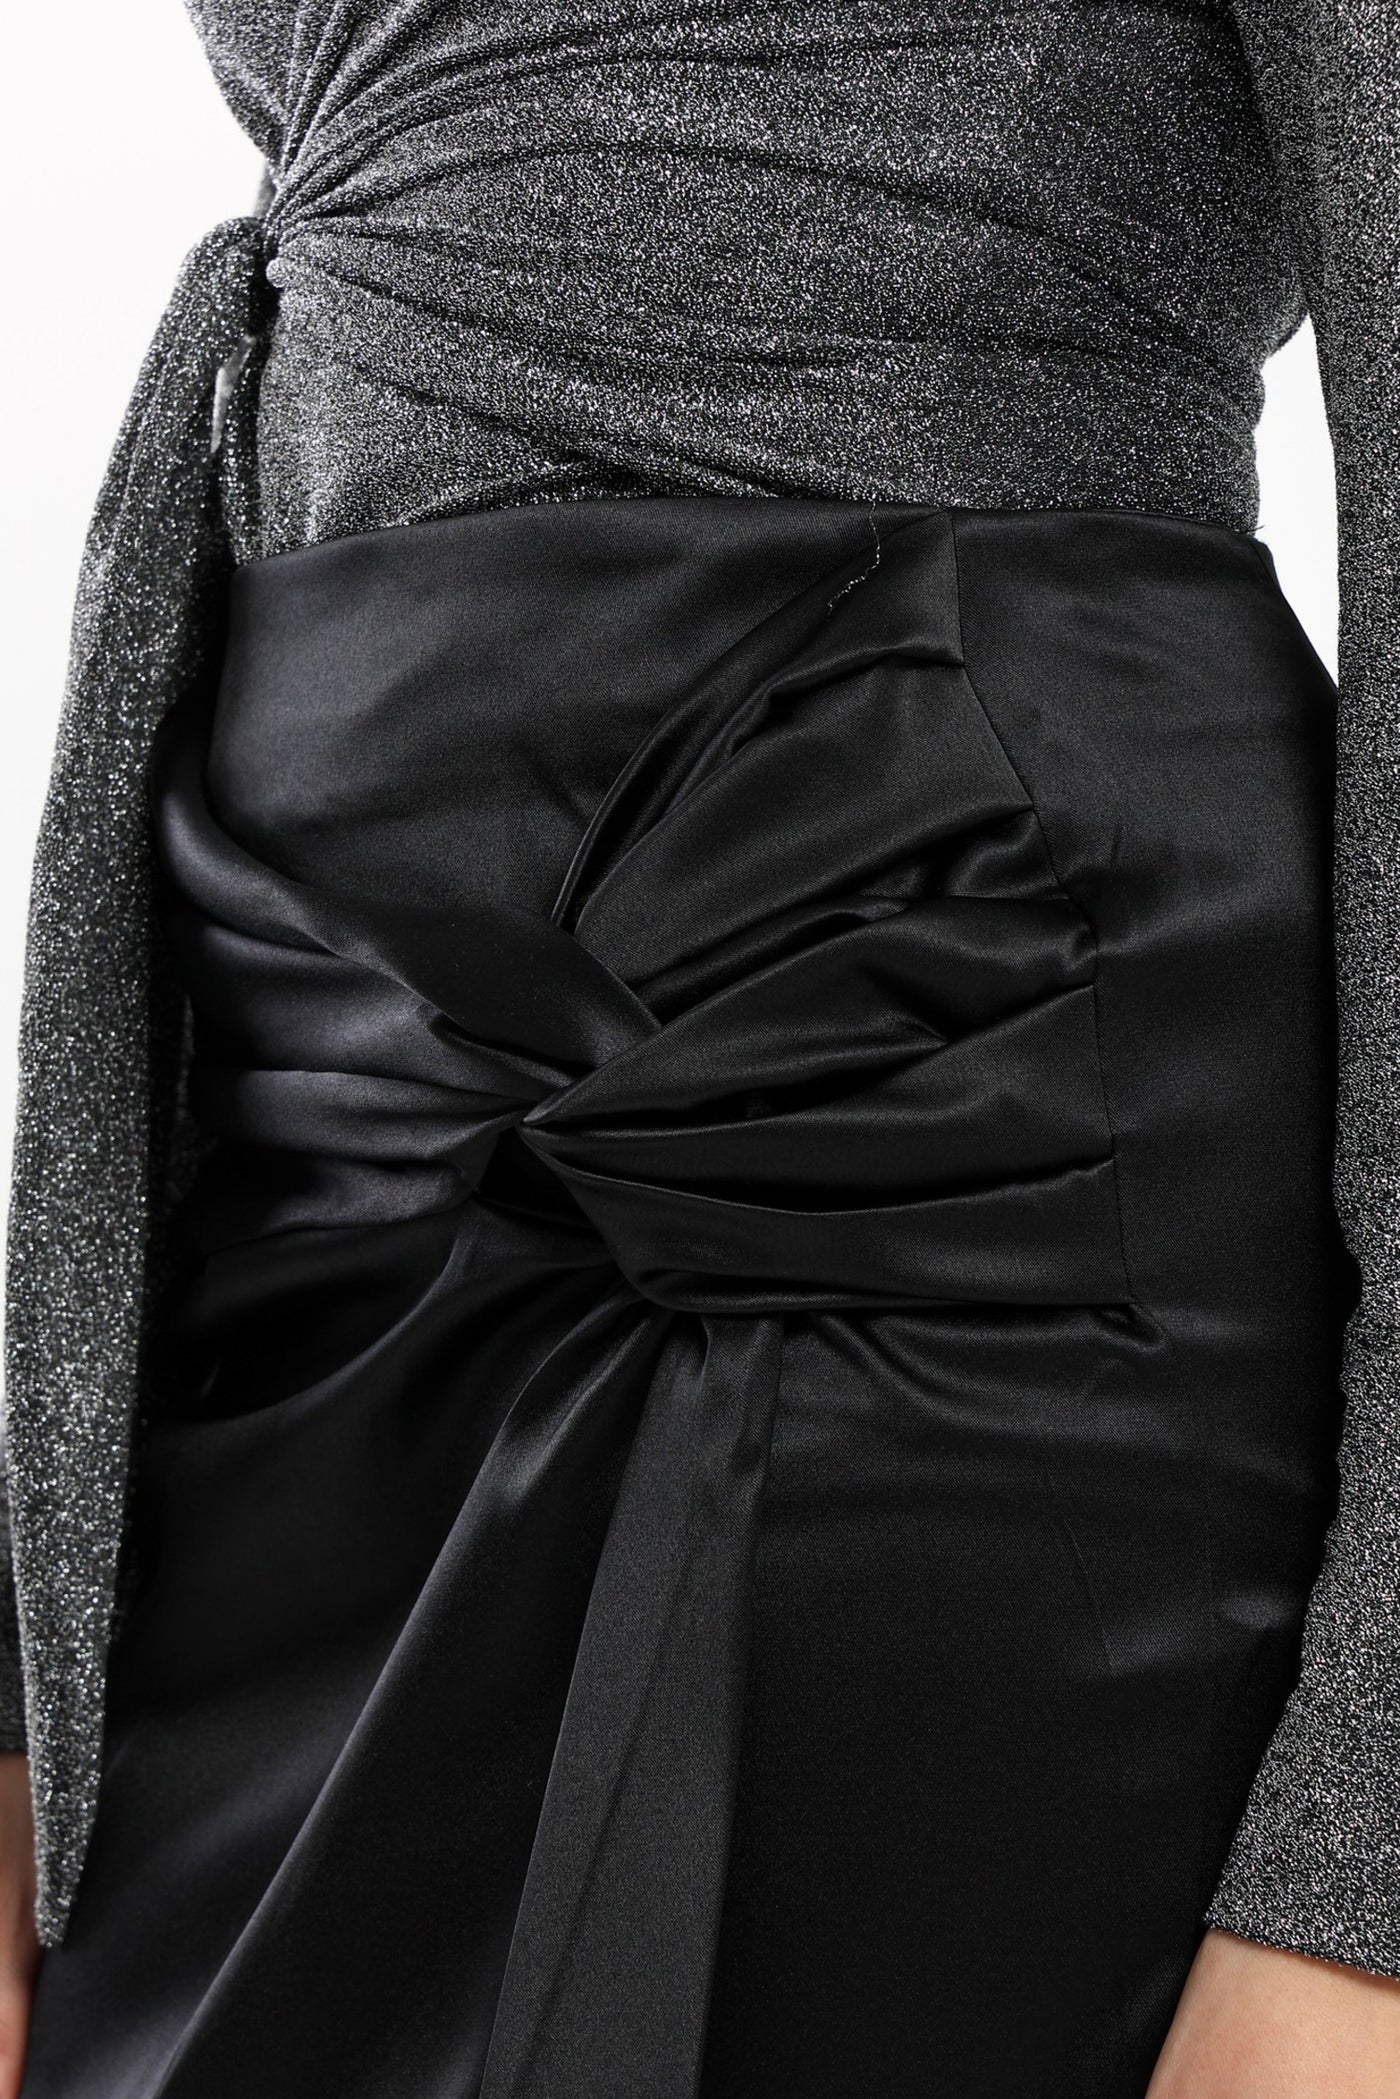 Skirt - Mini Length - Side Knot